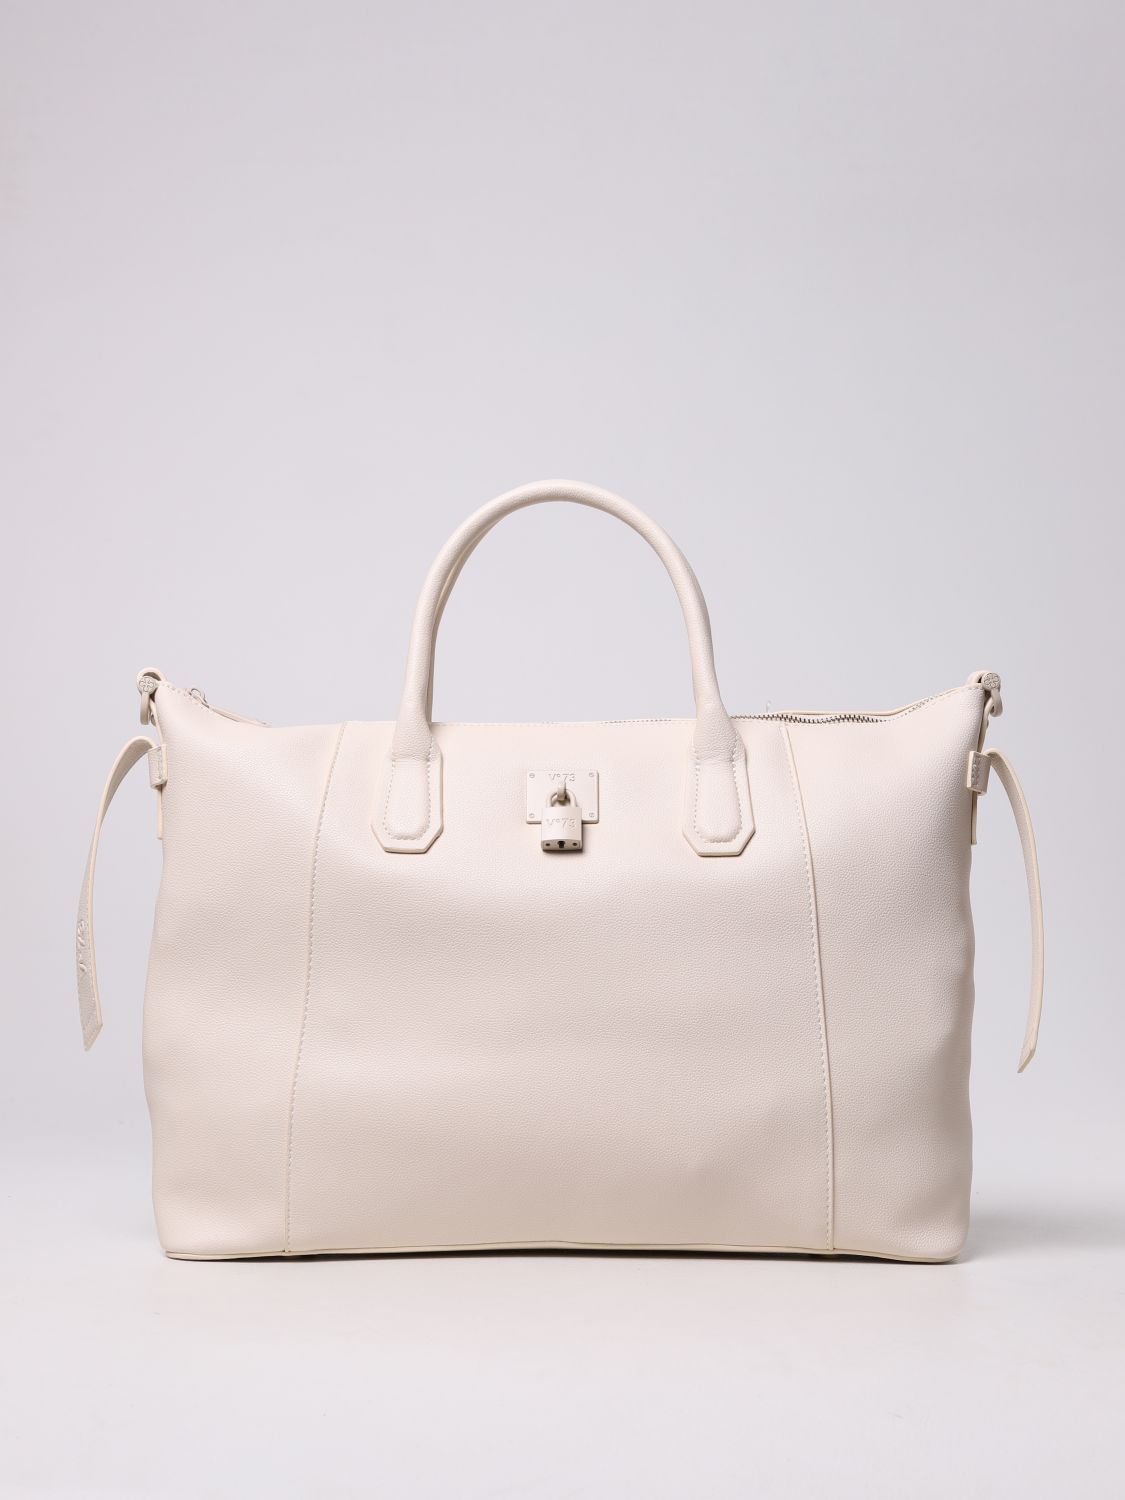 V73: Mariel Bis V ° 73 bag in synthetic leather - Ecru | V73 tote bags ...